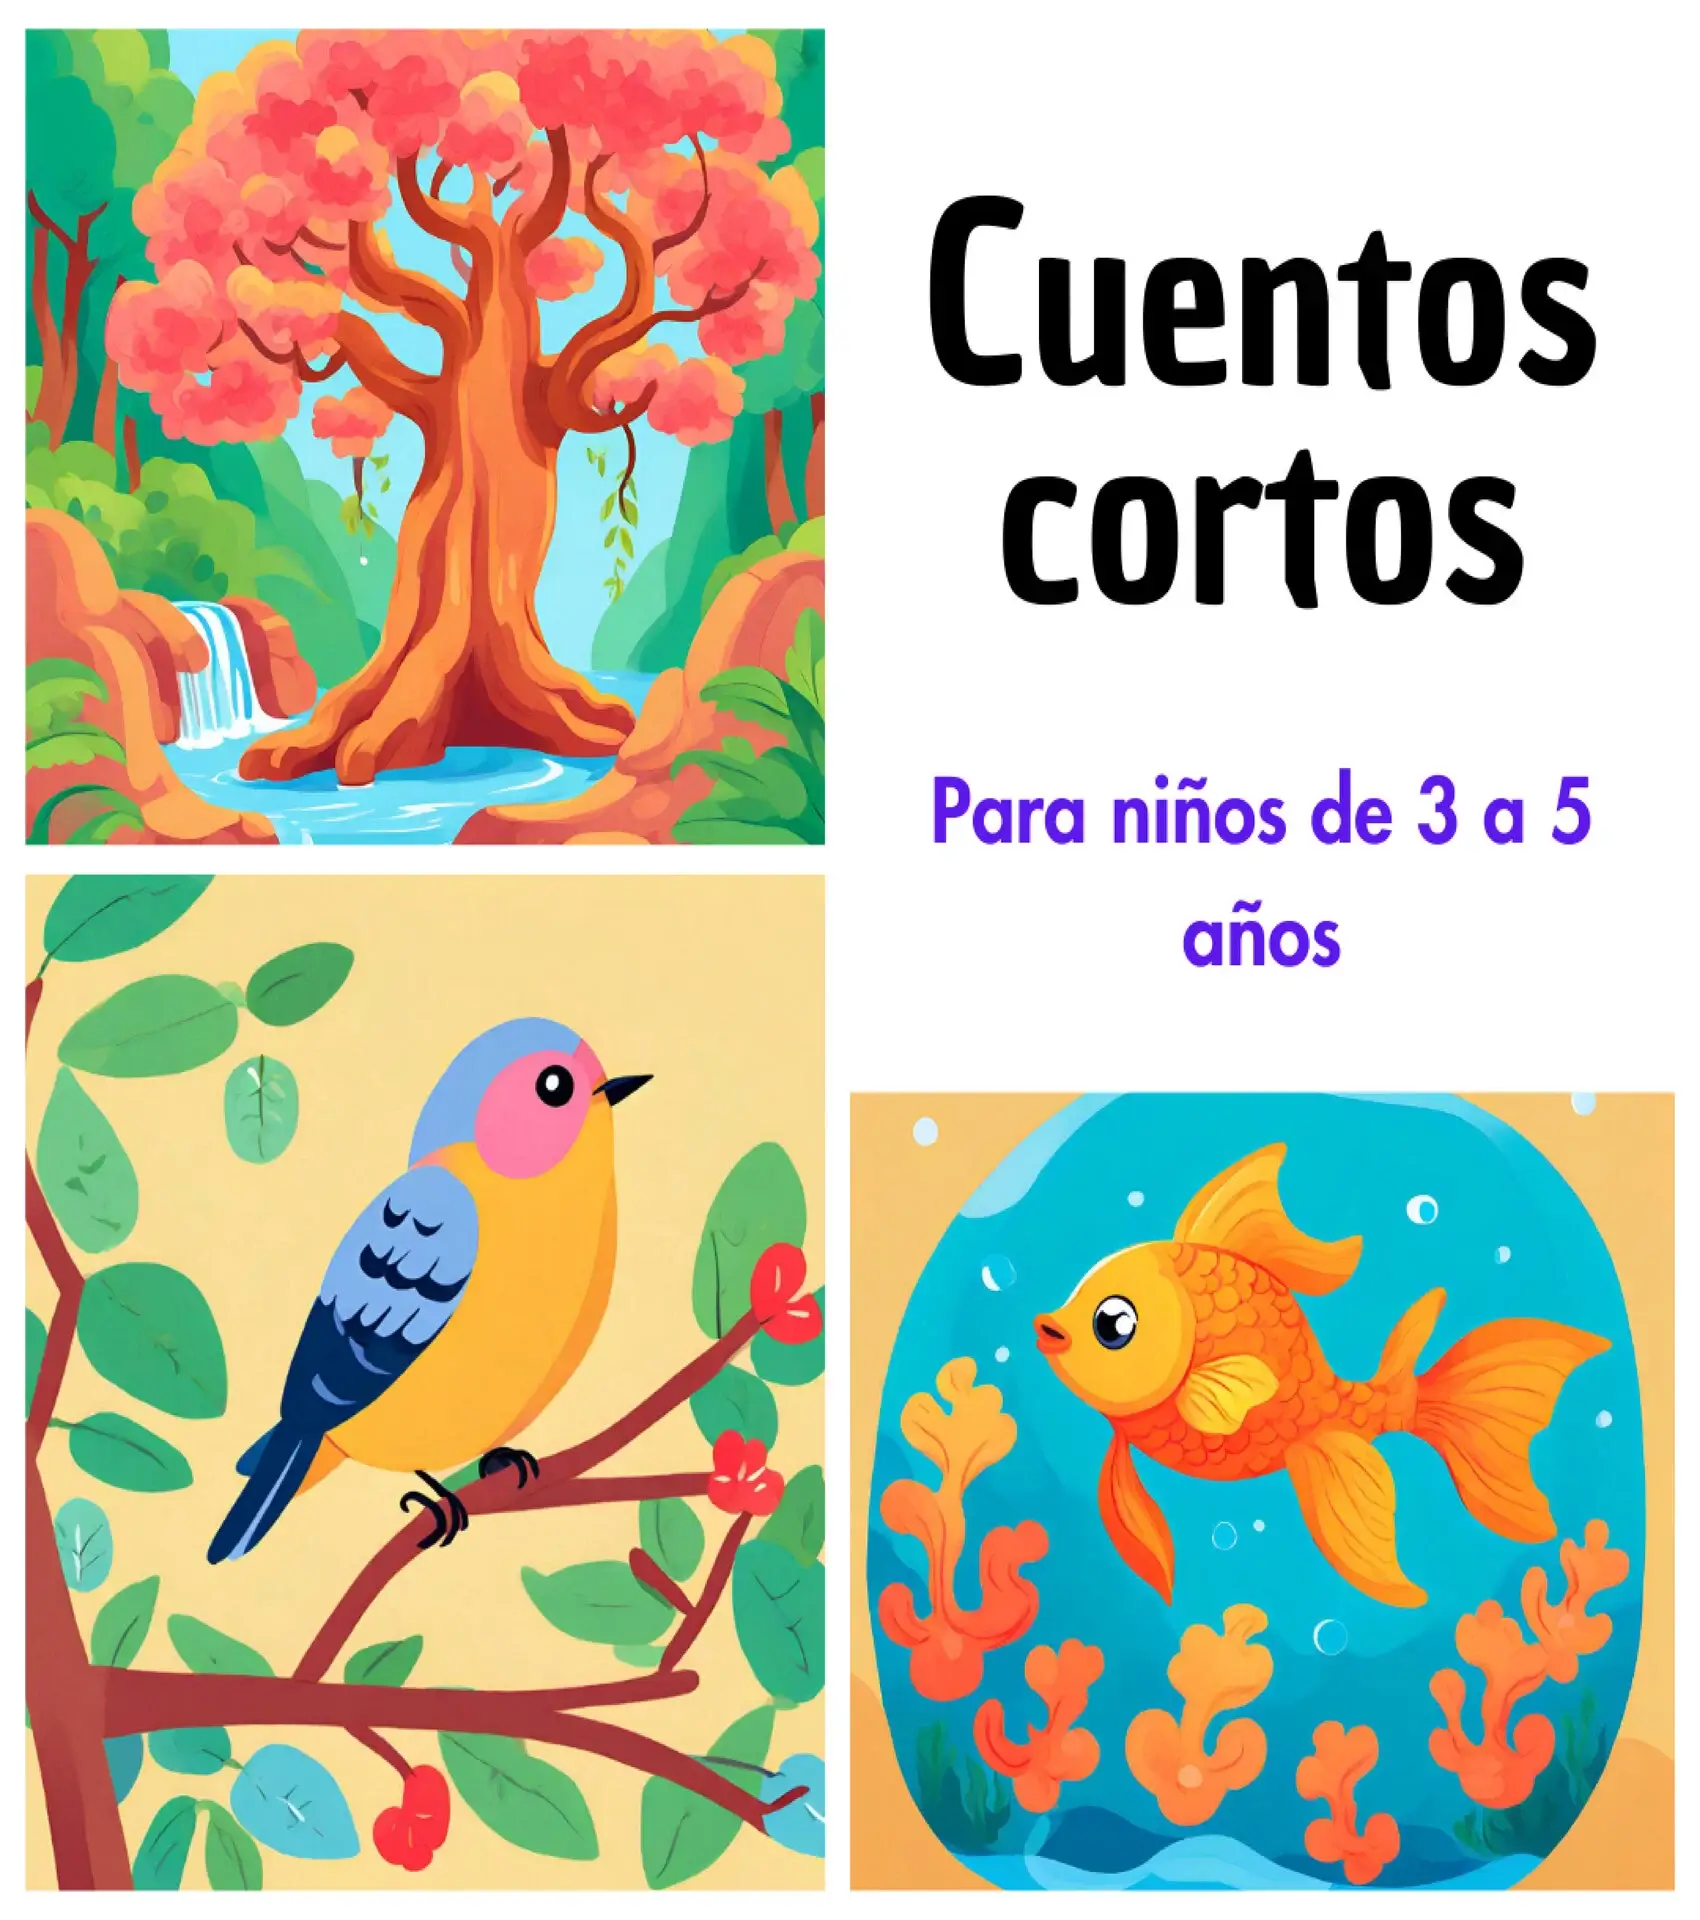 Cuentos cortos para niños de 3 a 5 años - Cuentos en español, Materiales  educativos, Historias cortas para niños y Orientación familiar